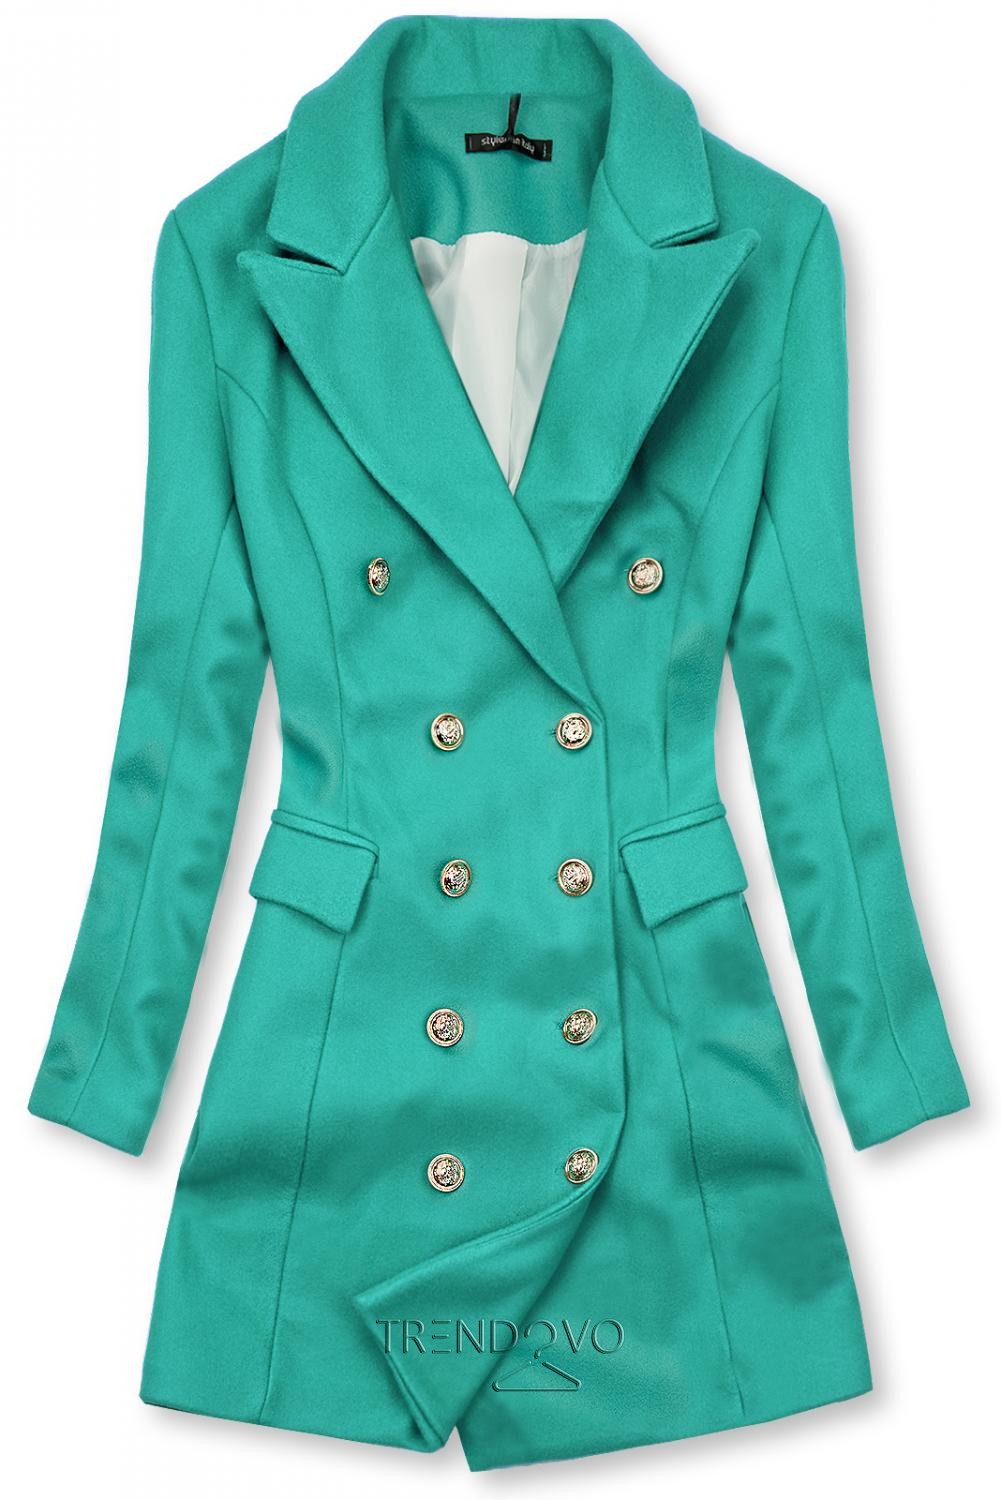 Elegantný jesenný kabát zelený